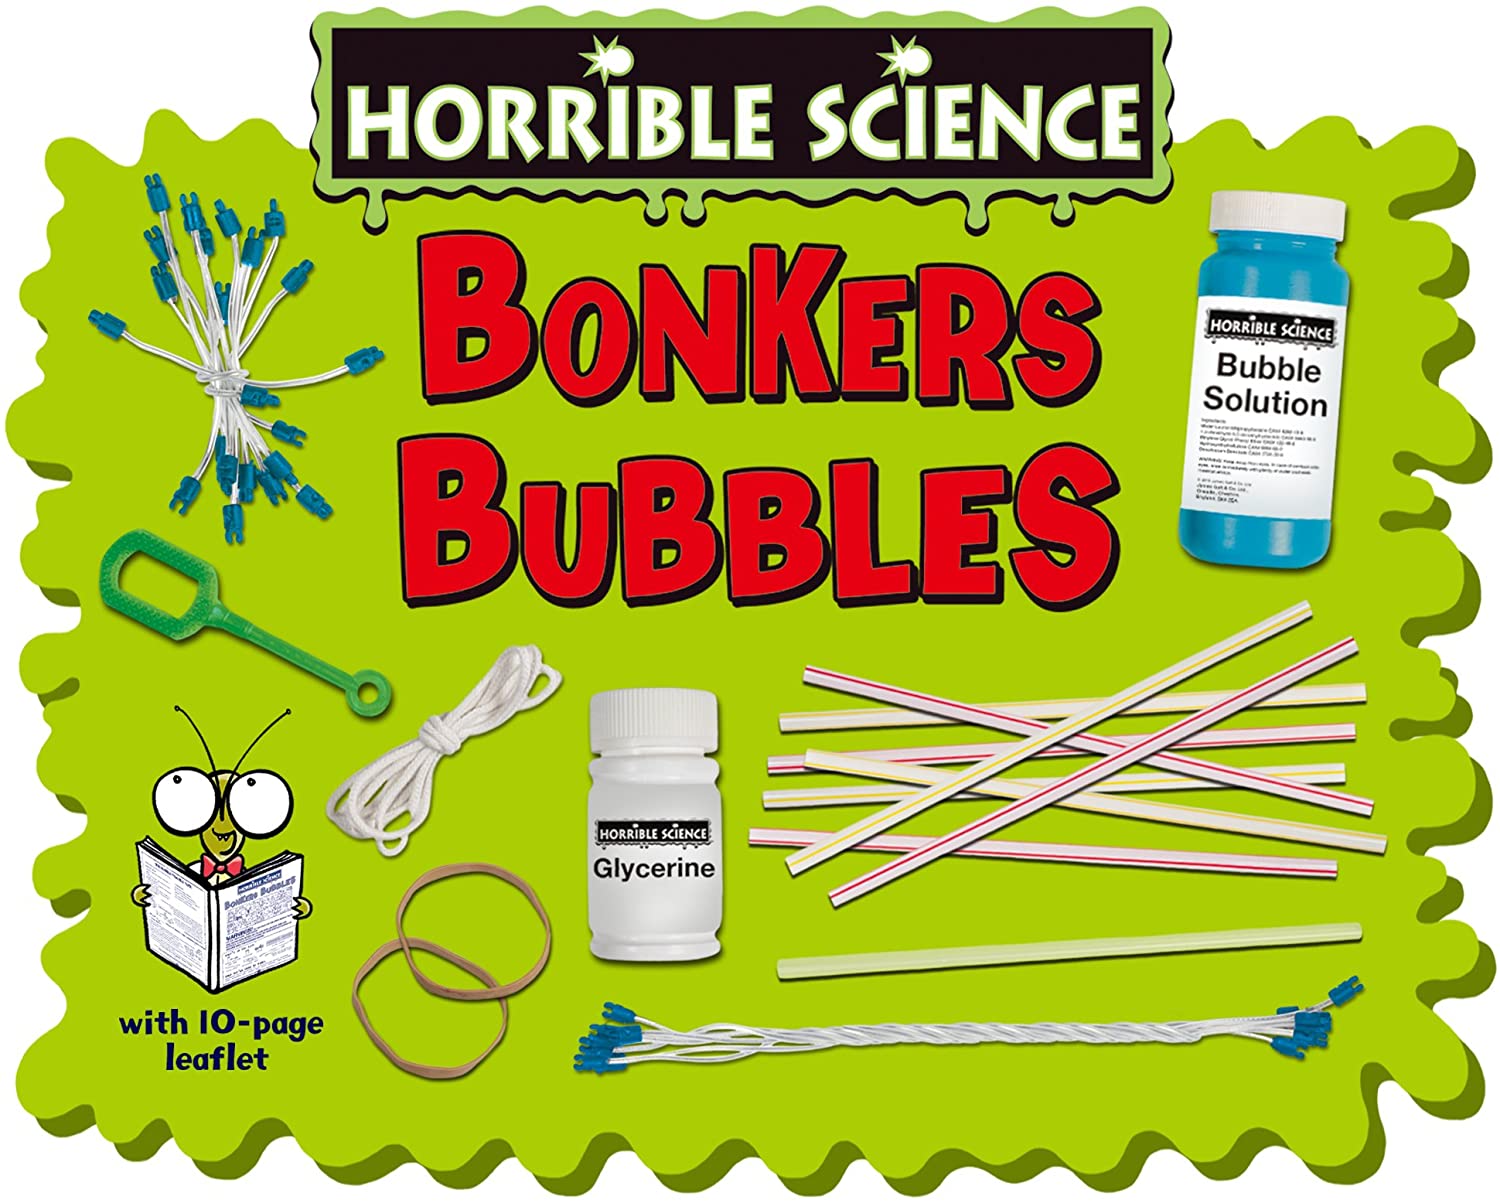 Galt - Bonkers Bubbles